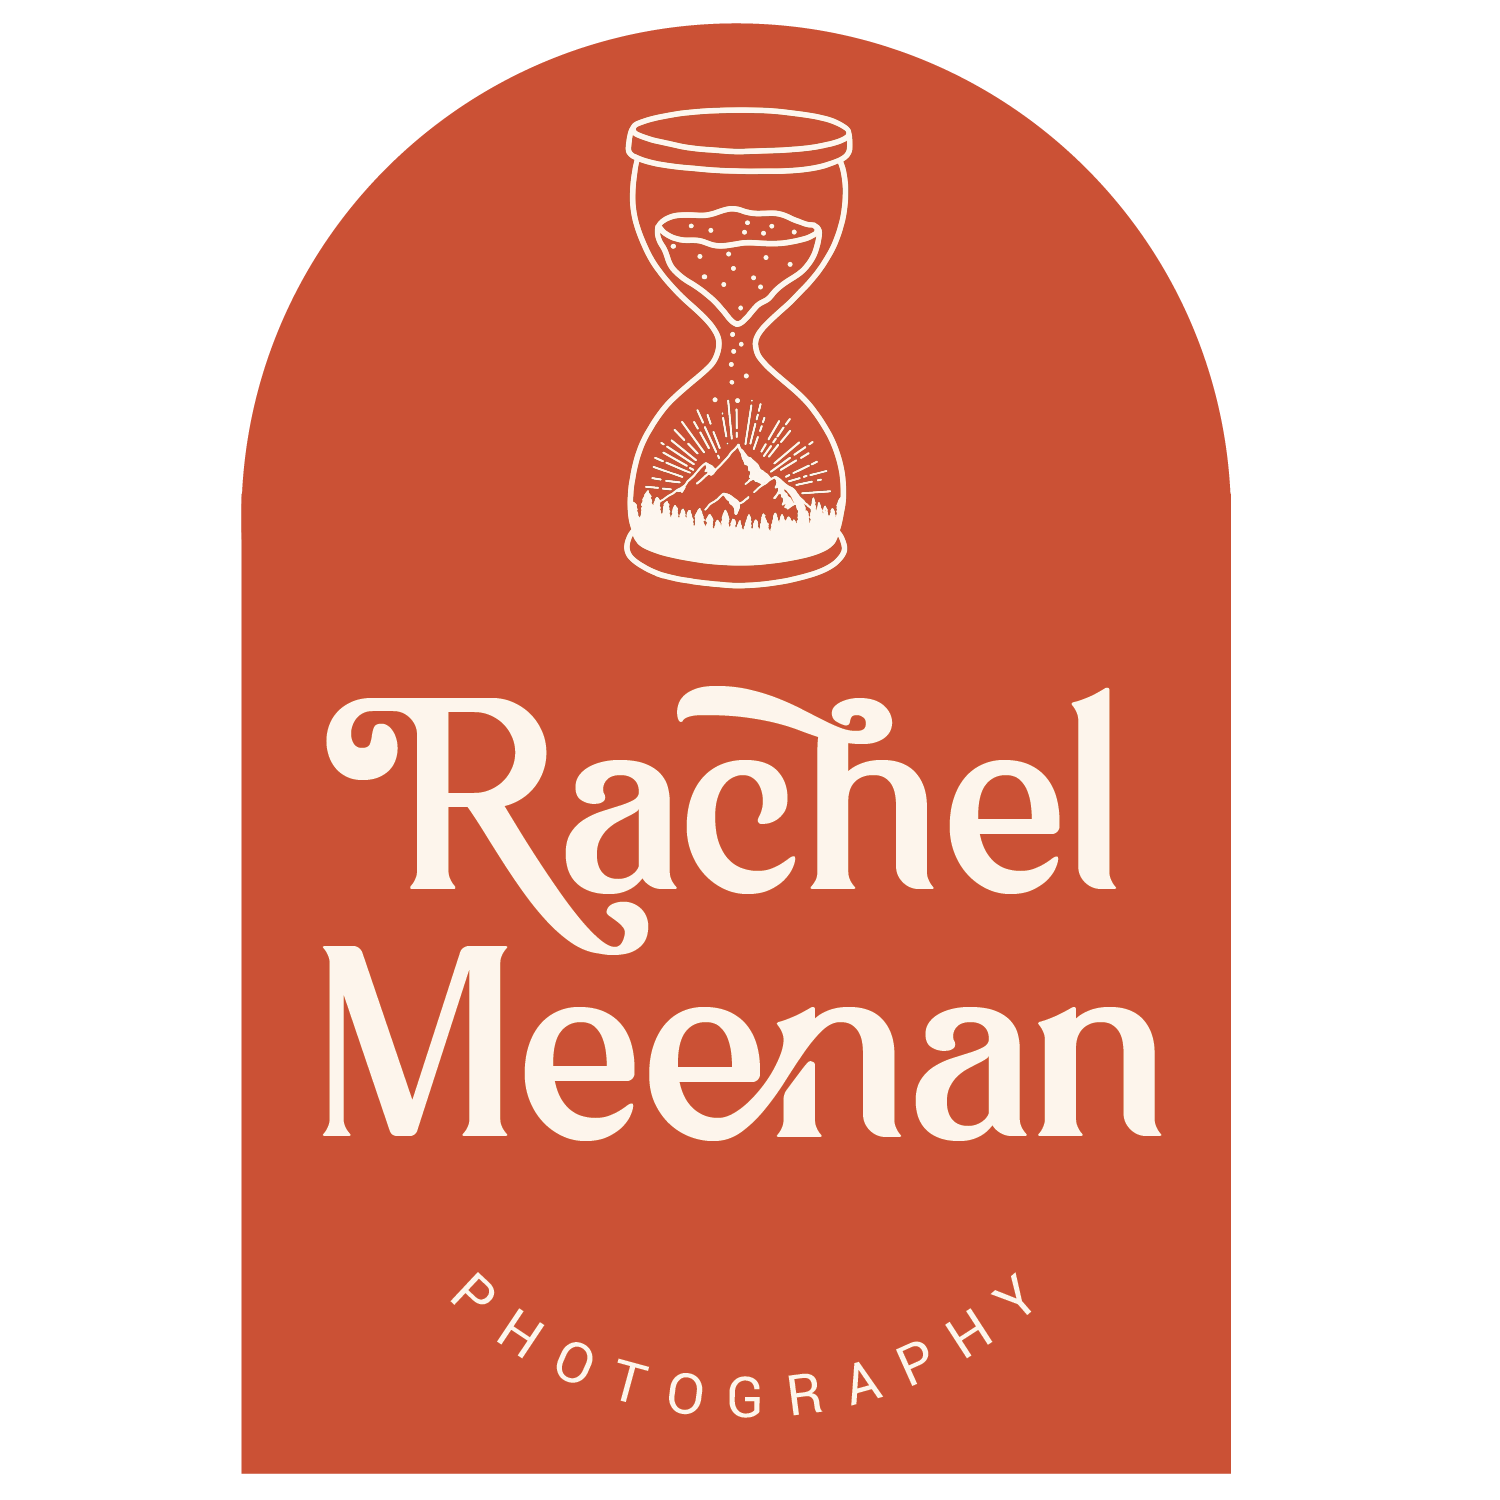 Rachel Meenan Photography